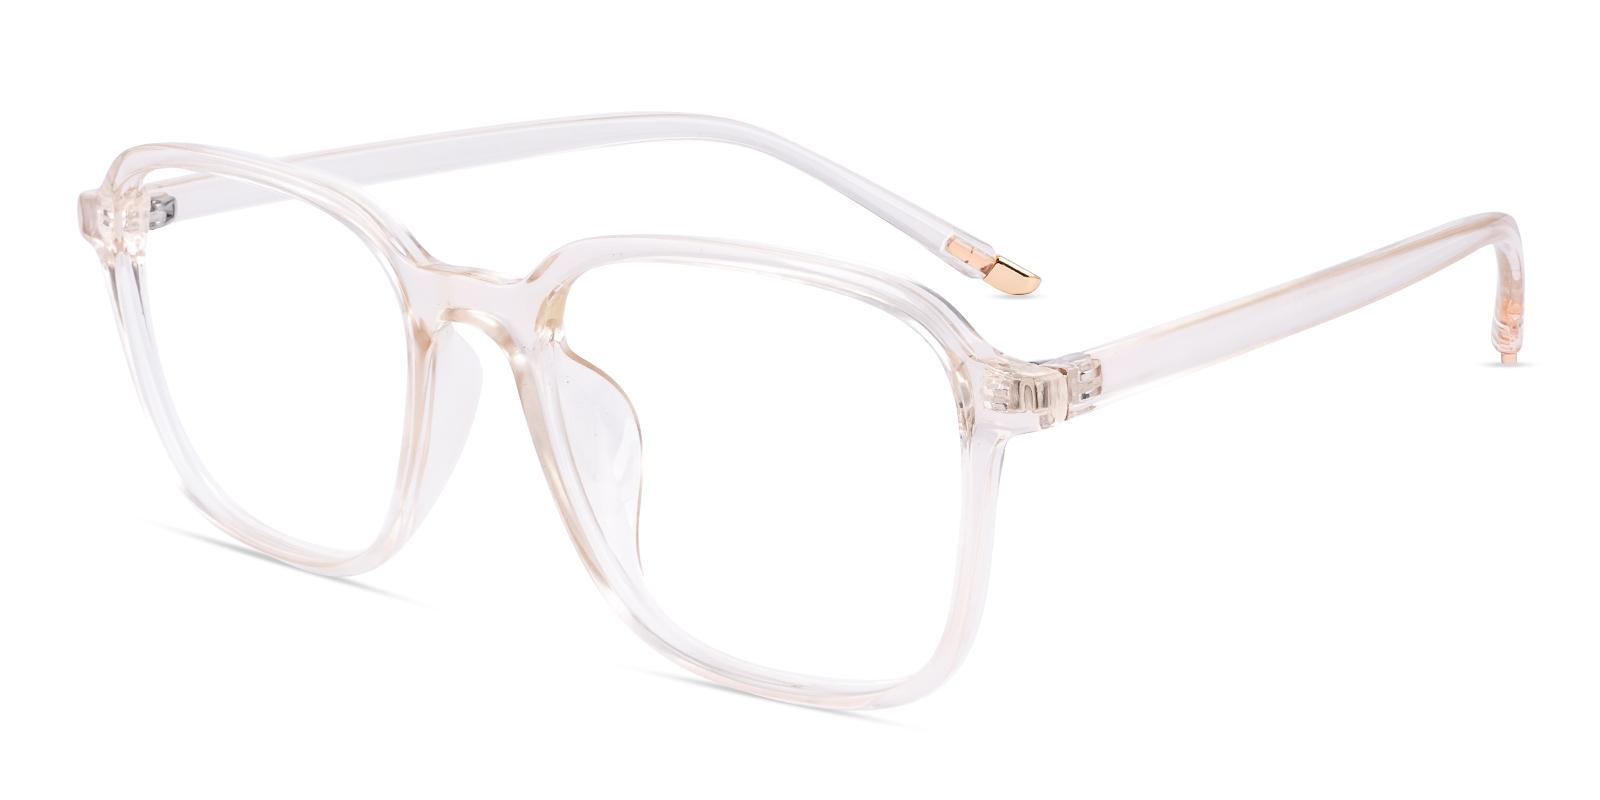 Viscos Orange Plastic Eyeglasses , UniversalBridgeFit Frames from ABBE Glasses